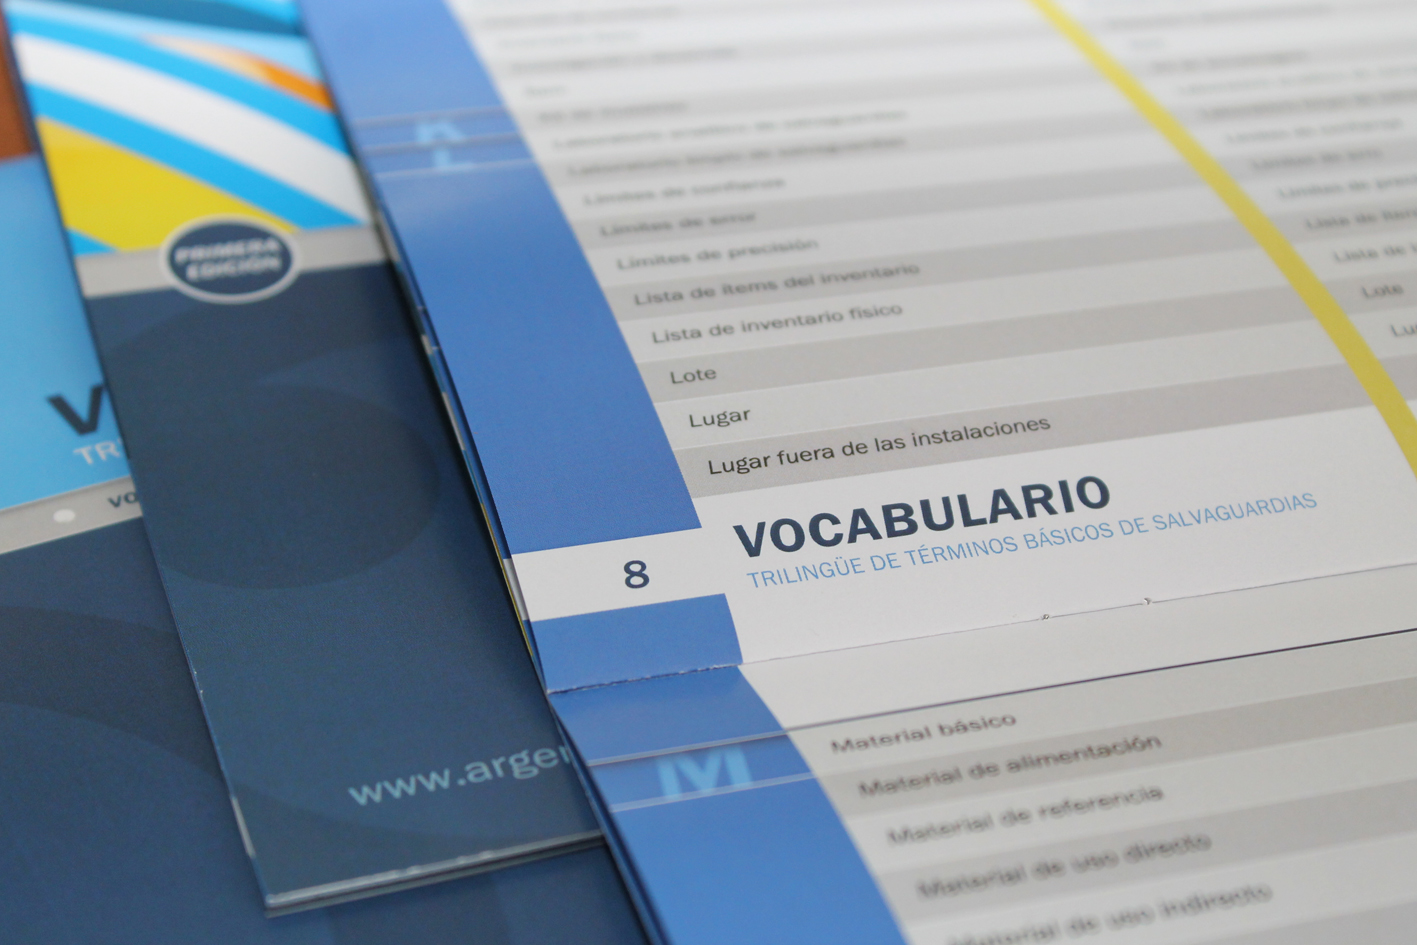 La primera edición del Vocabulario Técnico Trilingüe (español, portugués e inglés) reúne los principales términos empleados en el área de salvaguardias